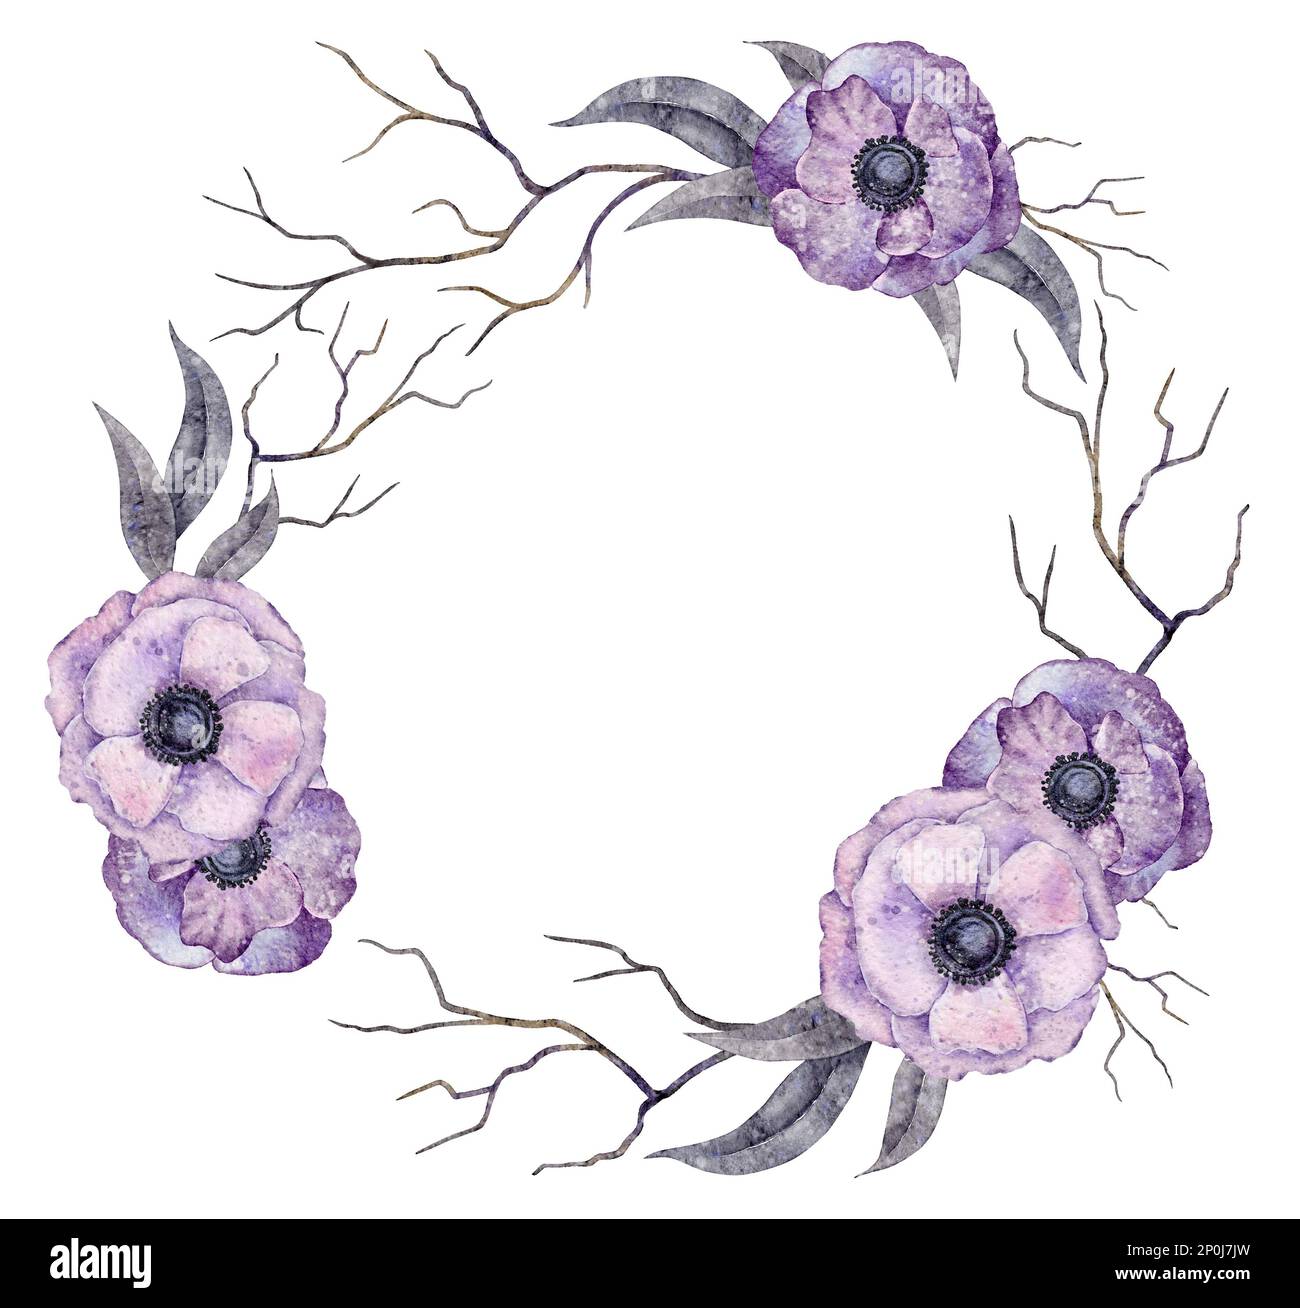 Aquarelle Wreath Boho Anemone fleurs, feuilles, branches. Cadre à motif fleuri violet. Éléments d'Halloween. Illustration de la sorcière isolée sur fond blanc Banque D'Images